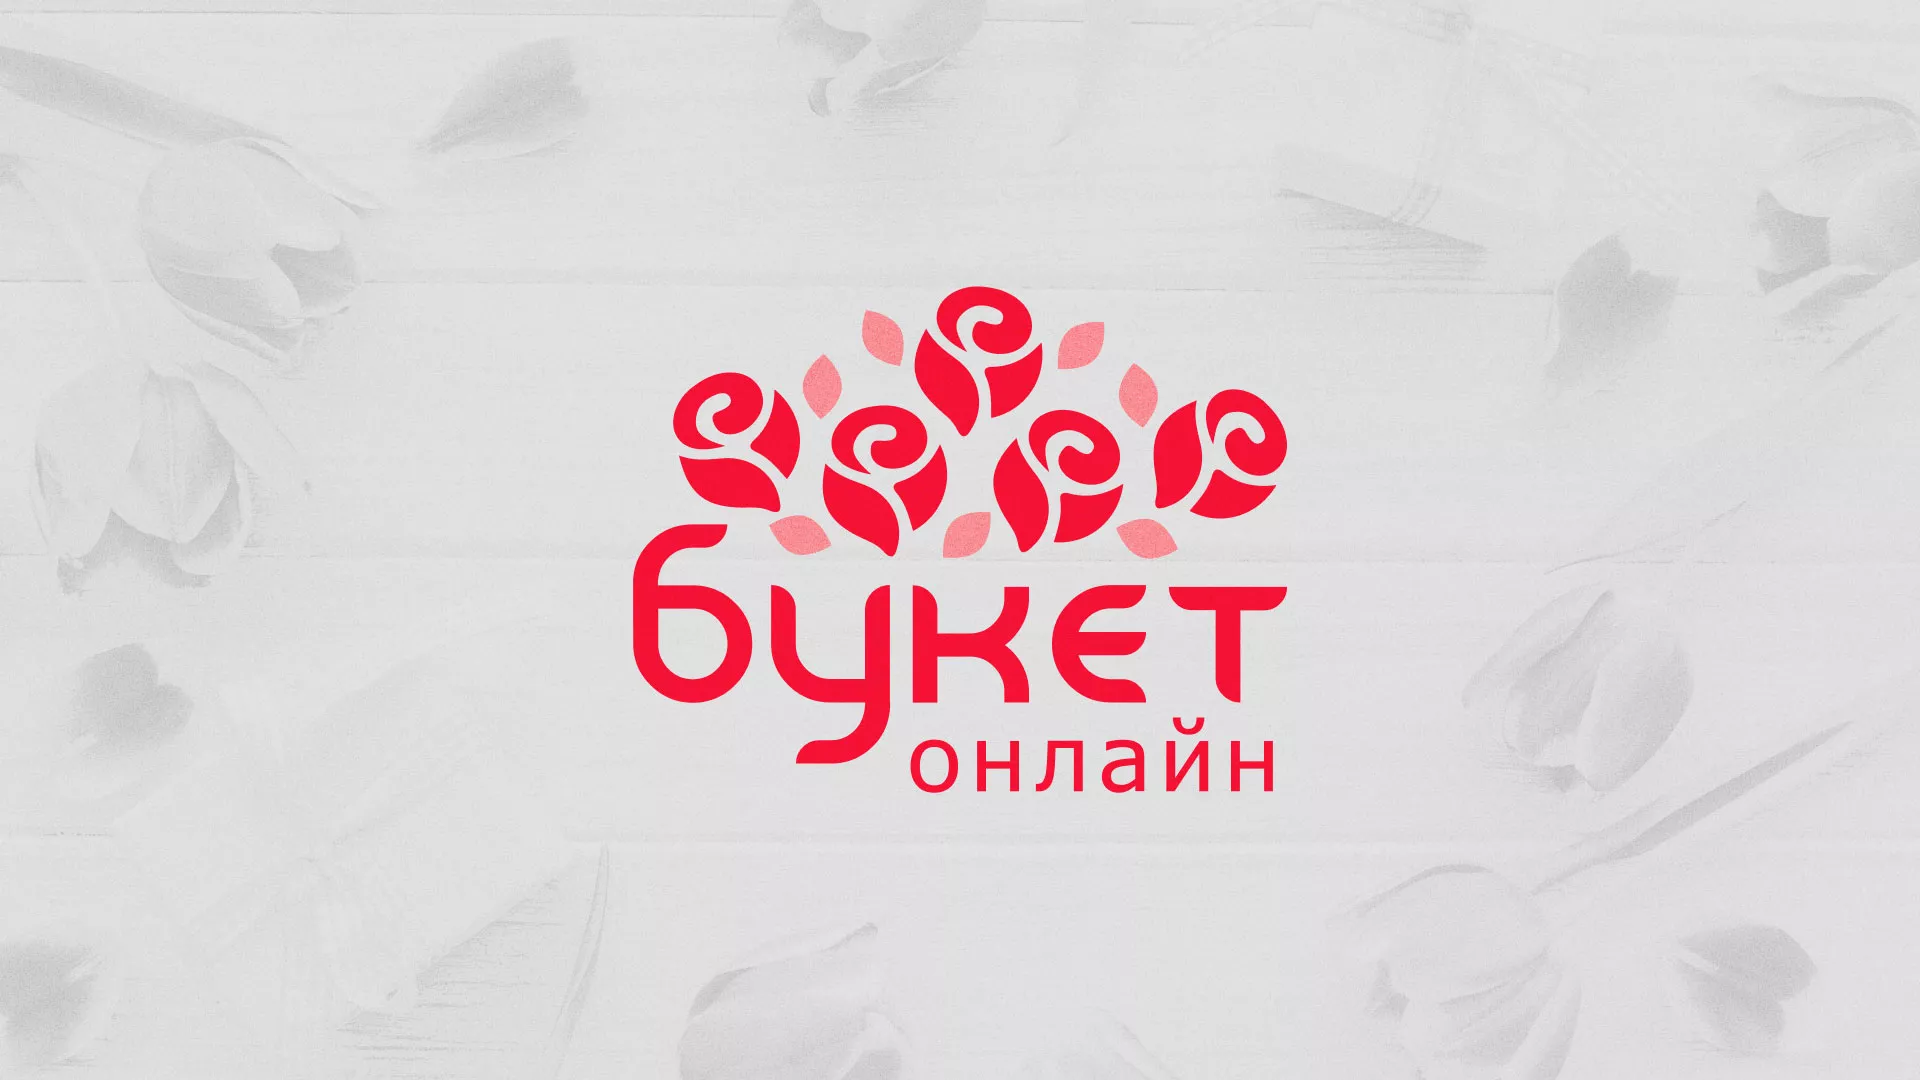 Создание интернет-магазина «Букет-онлайн» по цветам в Павловске